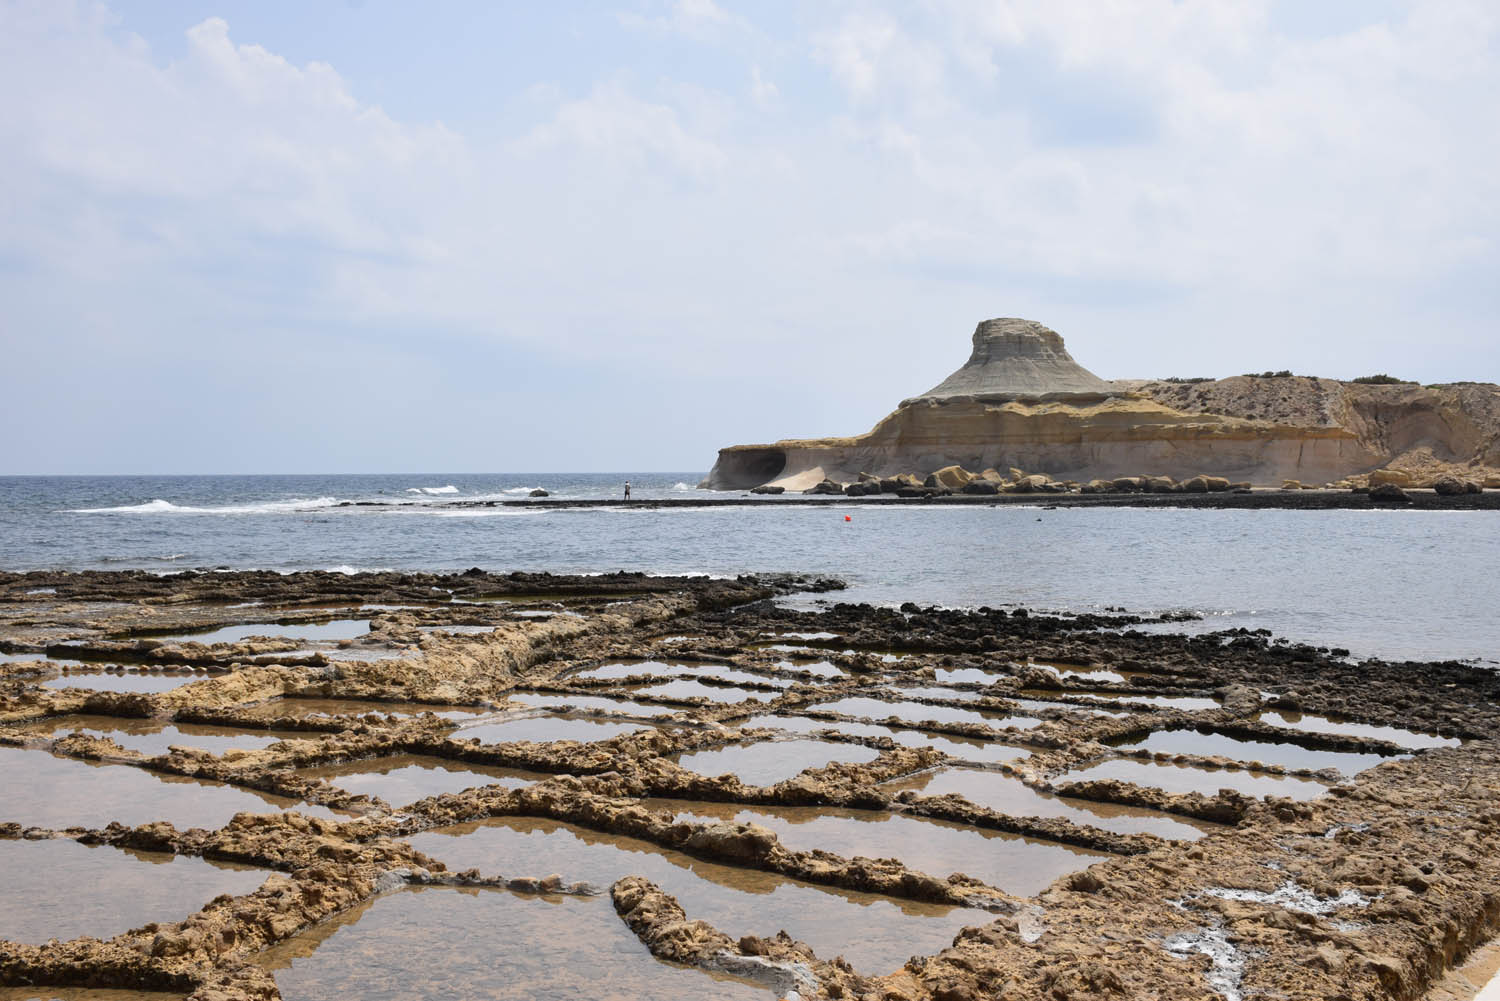 Salinas de Qbajjar - Salt Pans - em Gozo, Malta